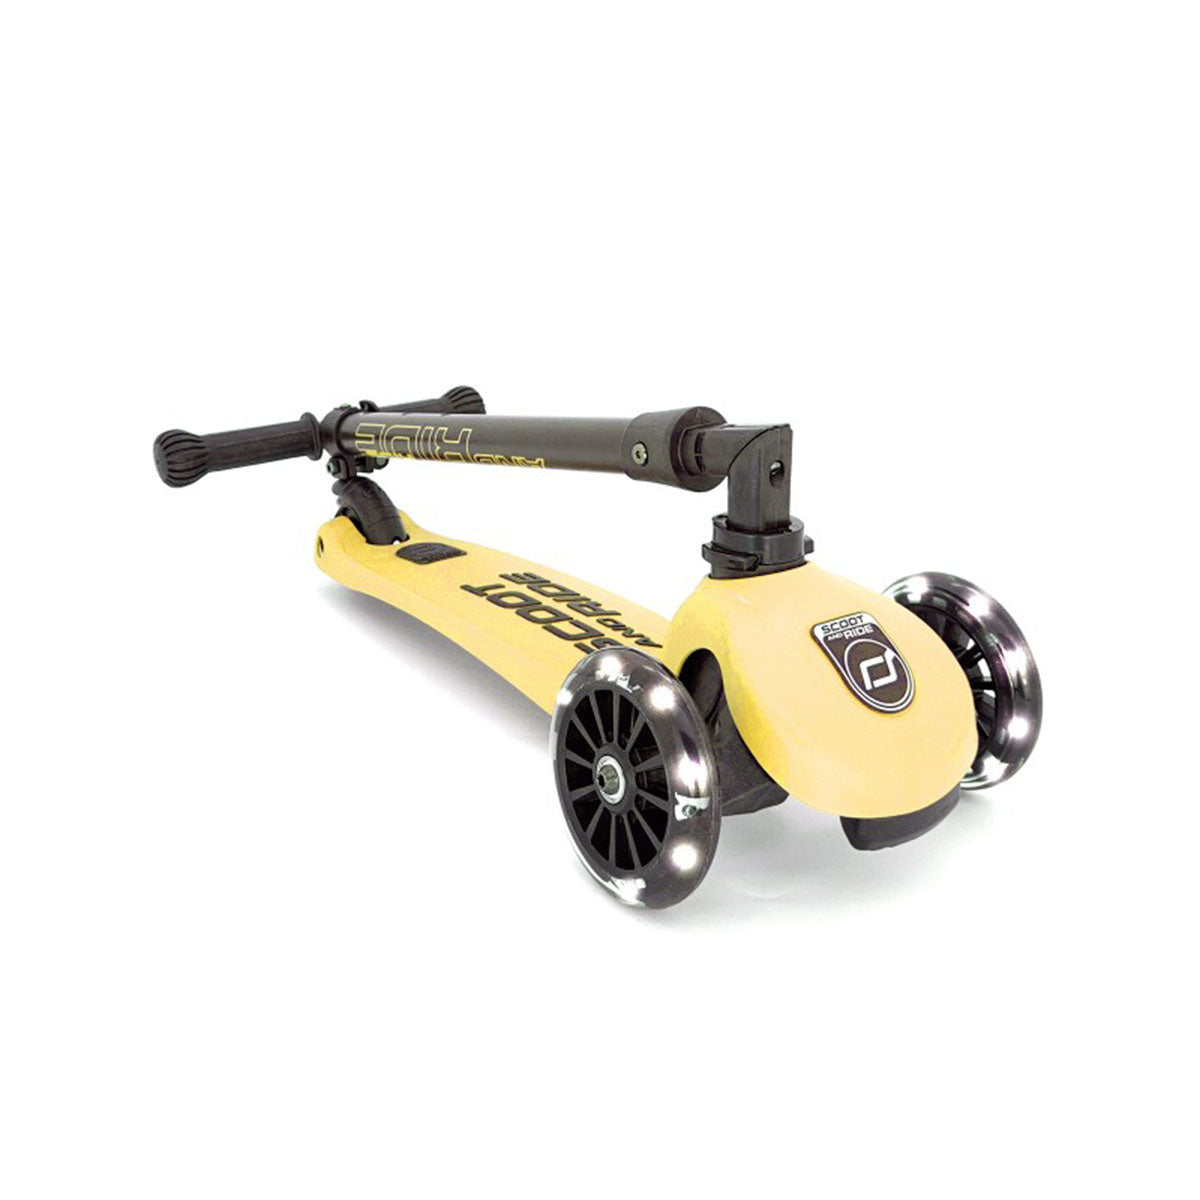 De Scoot and Ride Highwaykick 3 lemon is een fijne step voor kinderen vanaf 3 jaar. De Highwaykick is goed voor de ontwikkeling van de fijne motoriek, het evenwichtsgevoel en het zelfvertrouwen van kinderen. VanZus.